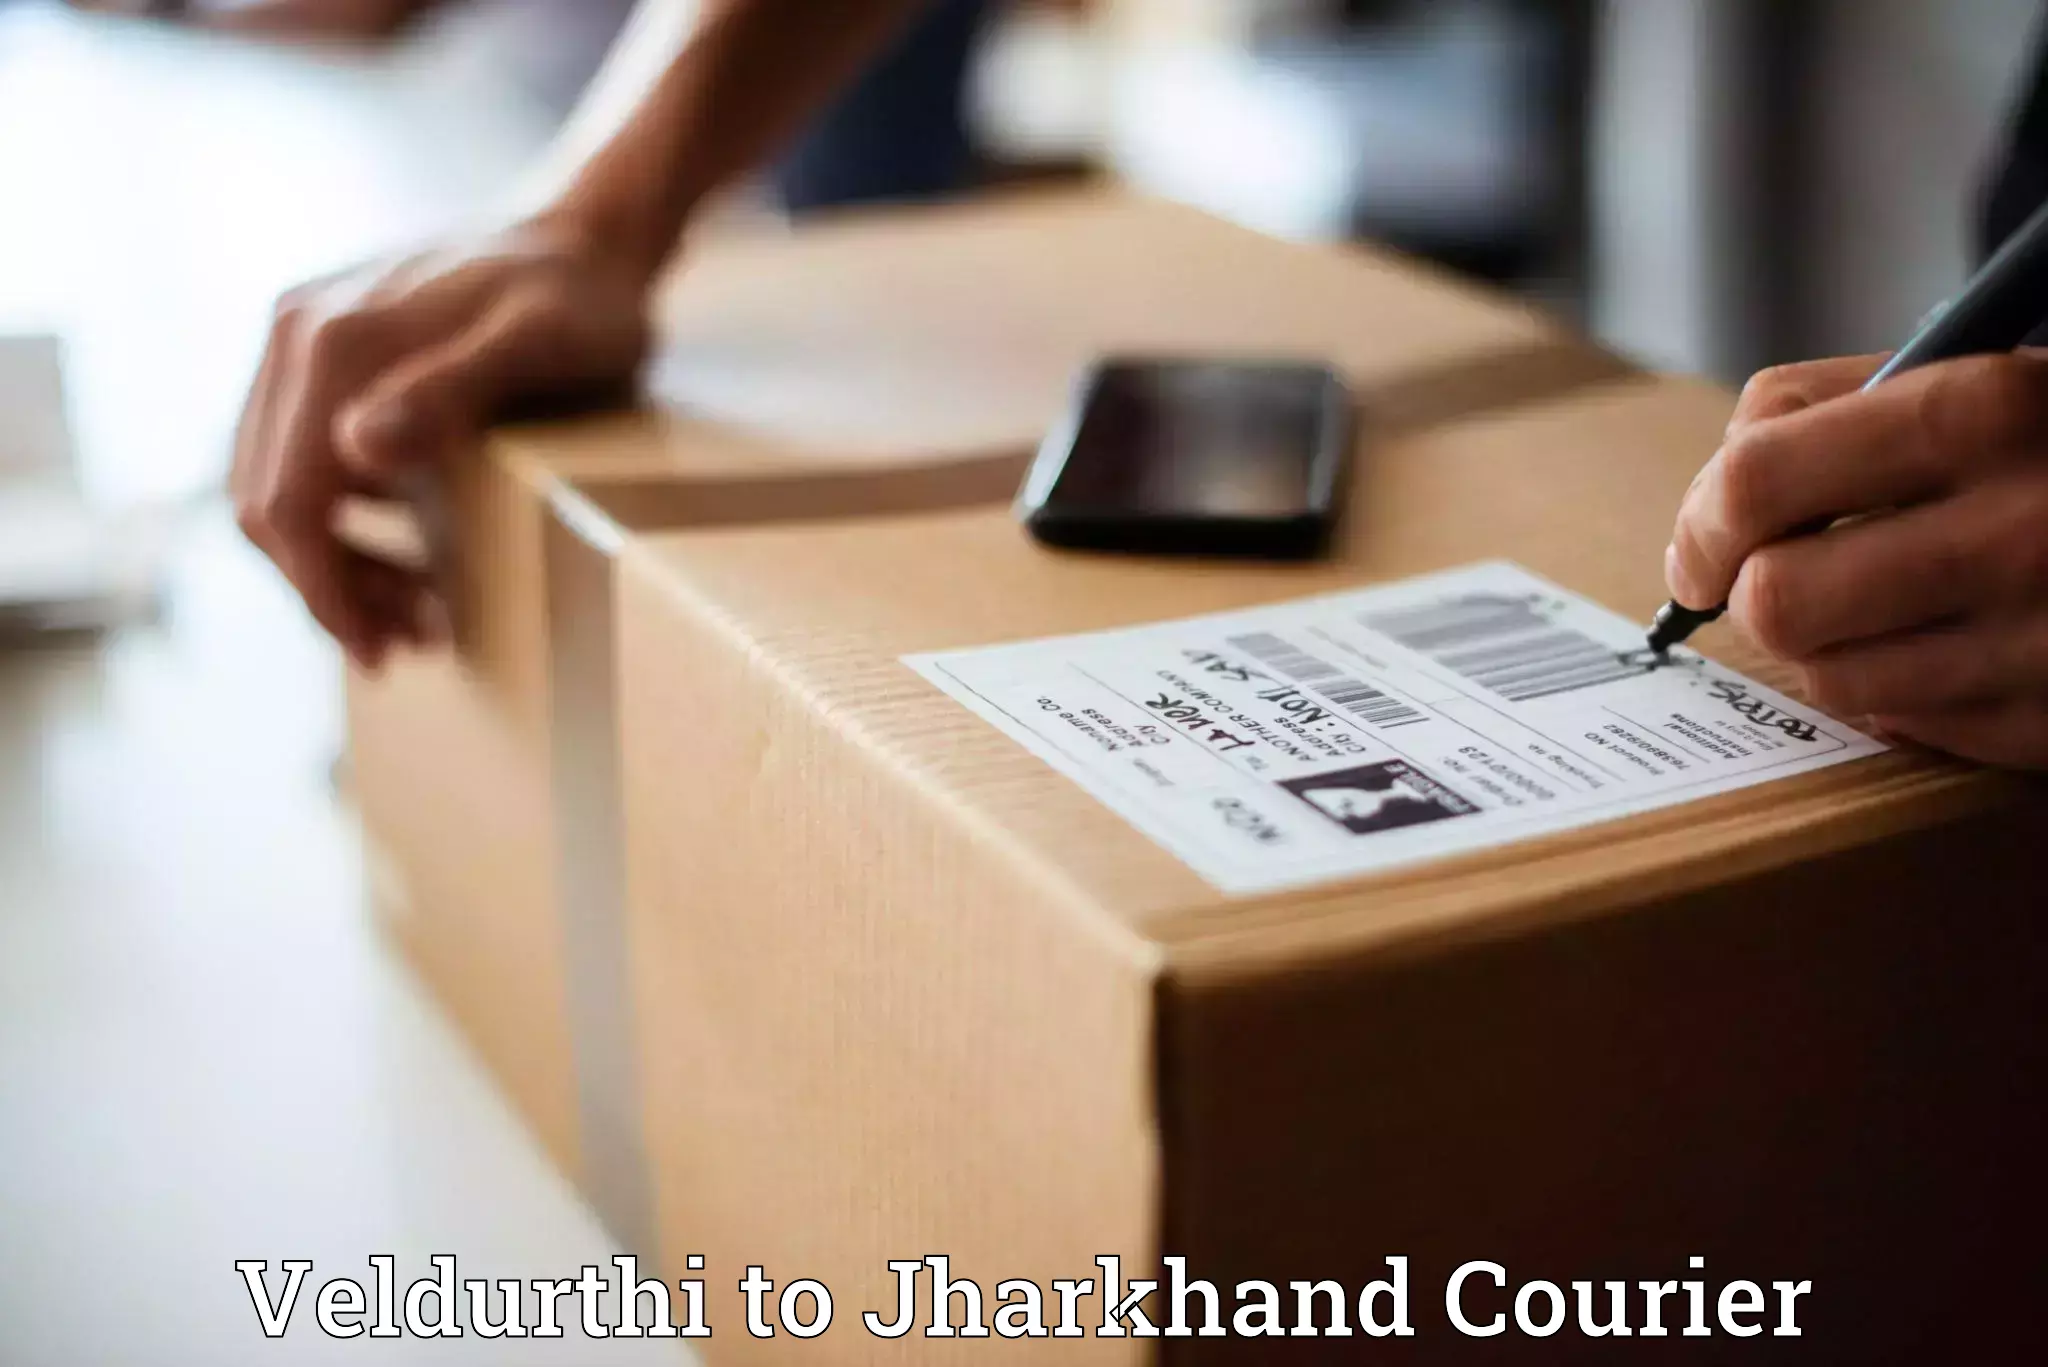 Return courier service in Veldurthi to Godabar Chatra